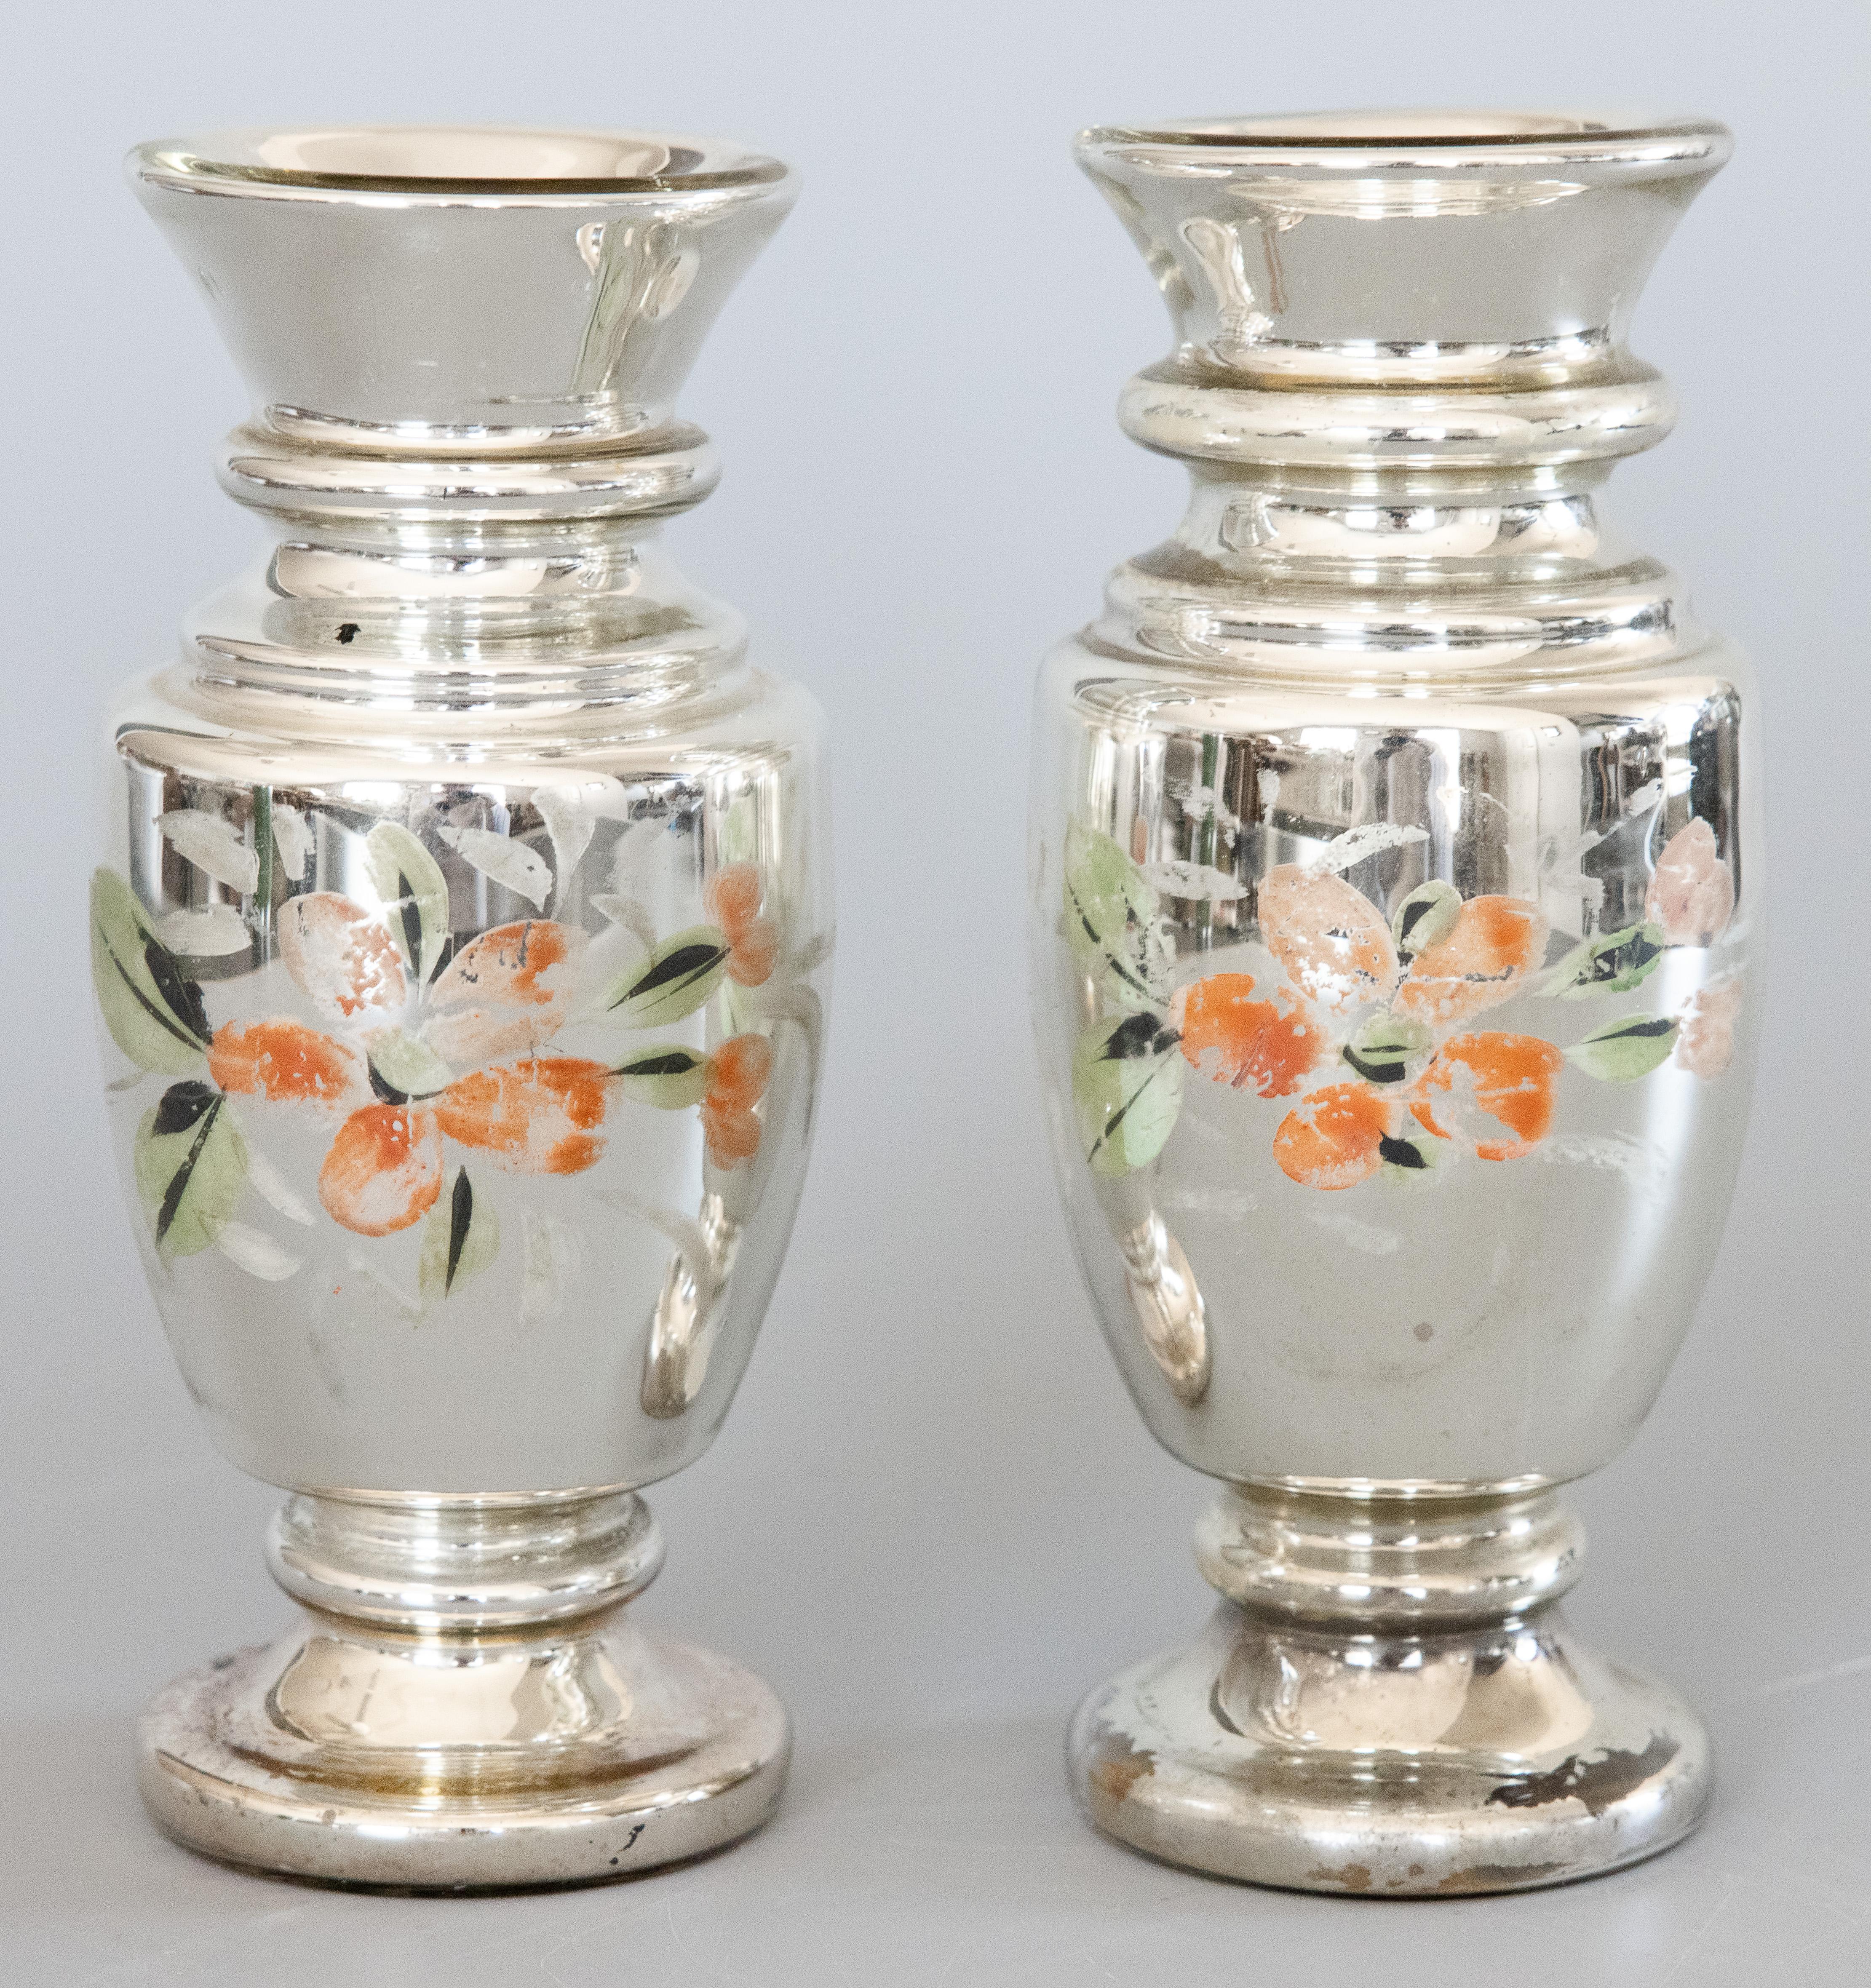 Ein hübsches Paar authentischer, antiker, mundgeblasener, dekorativer Quecksilberglasvasen aus England aus dem 19. Jahrhundert. Diese atemberaubenden Vasen haben stilvolle Formen mit handgemalten floralen Motiven in einer schönen Patina und wären